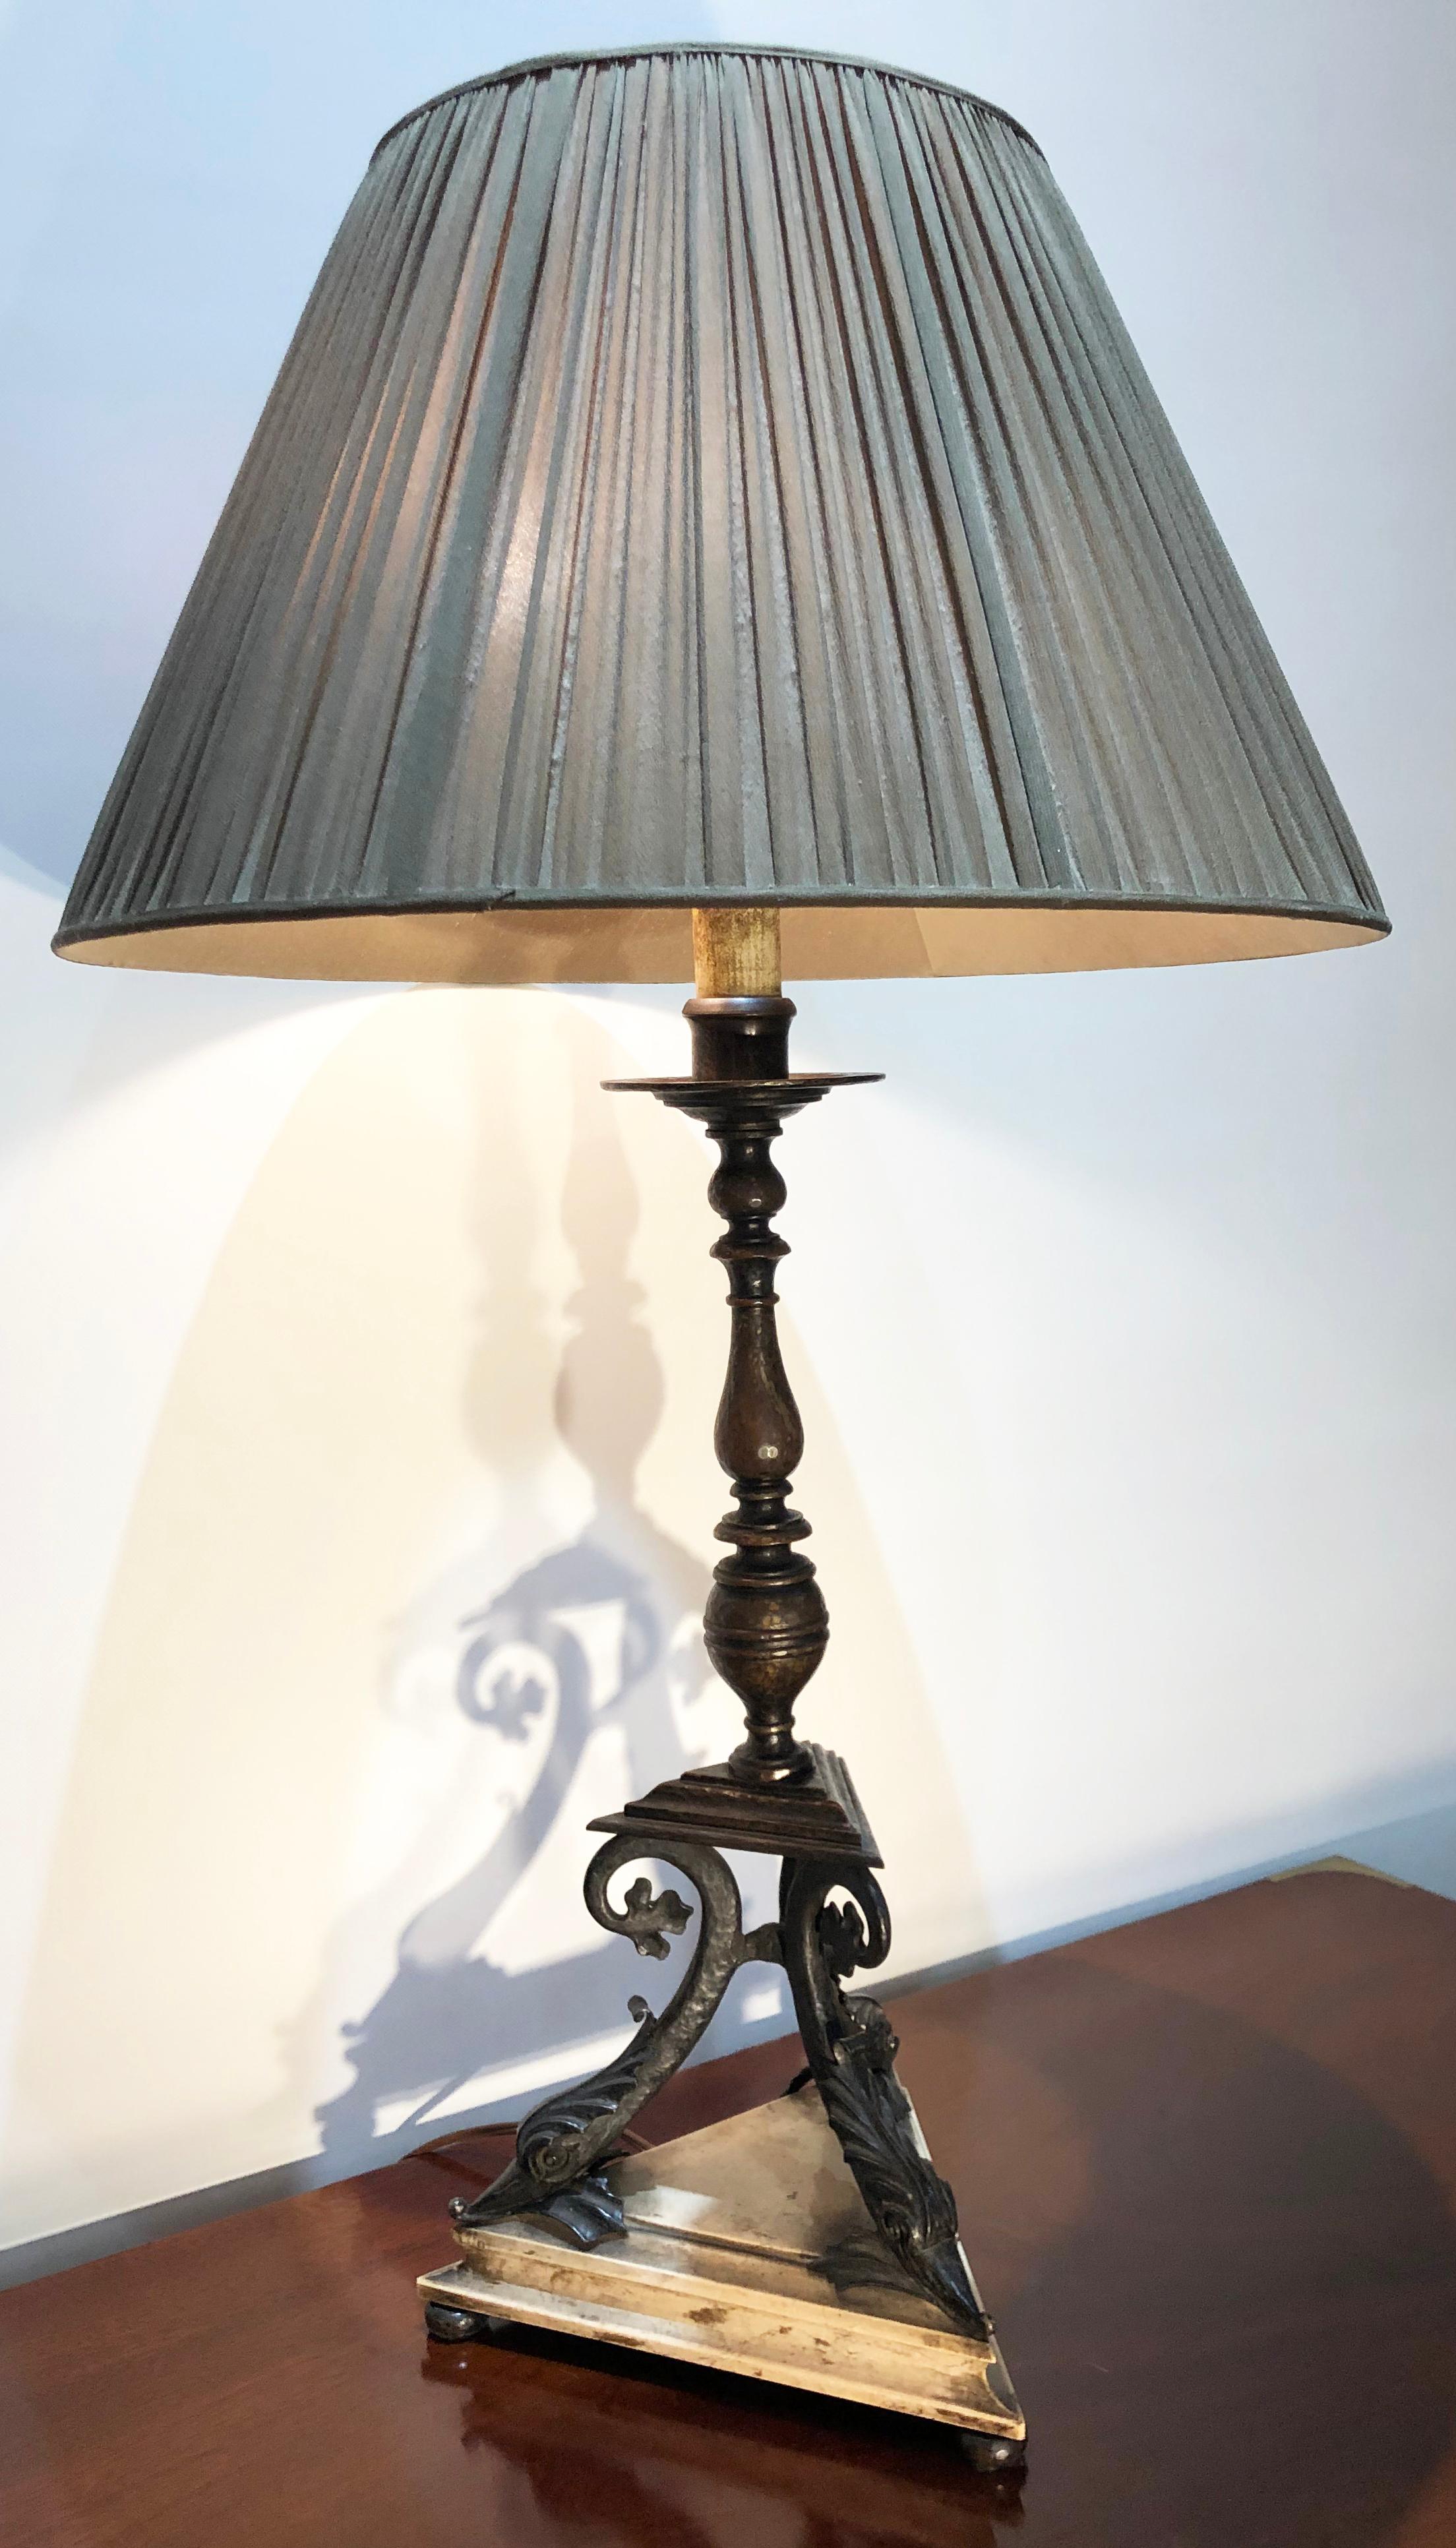 Dieser in Bronze gefasste Tisch aus dem frühen 20. Jahrhundert stammt aus dem Nachlass von Peggy und David Rockefeller. Zuschreibung an E.F. Caldwell, um 1910. Wunderschönes Delphinmotiv am Sockel der Lampe. Die Bronzelampe ist auf einem Holzsockel